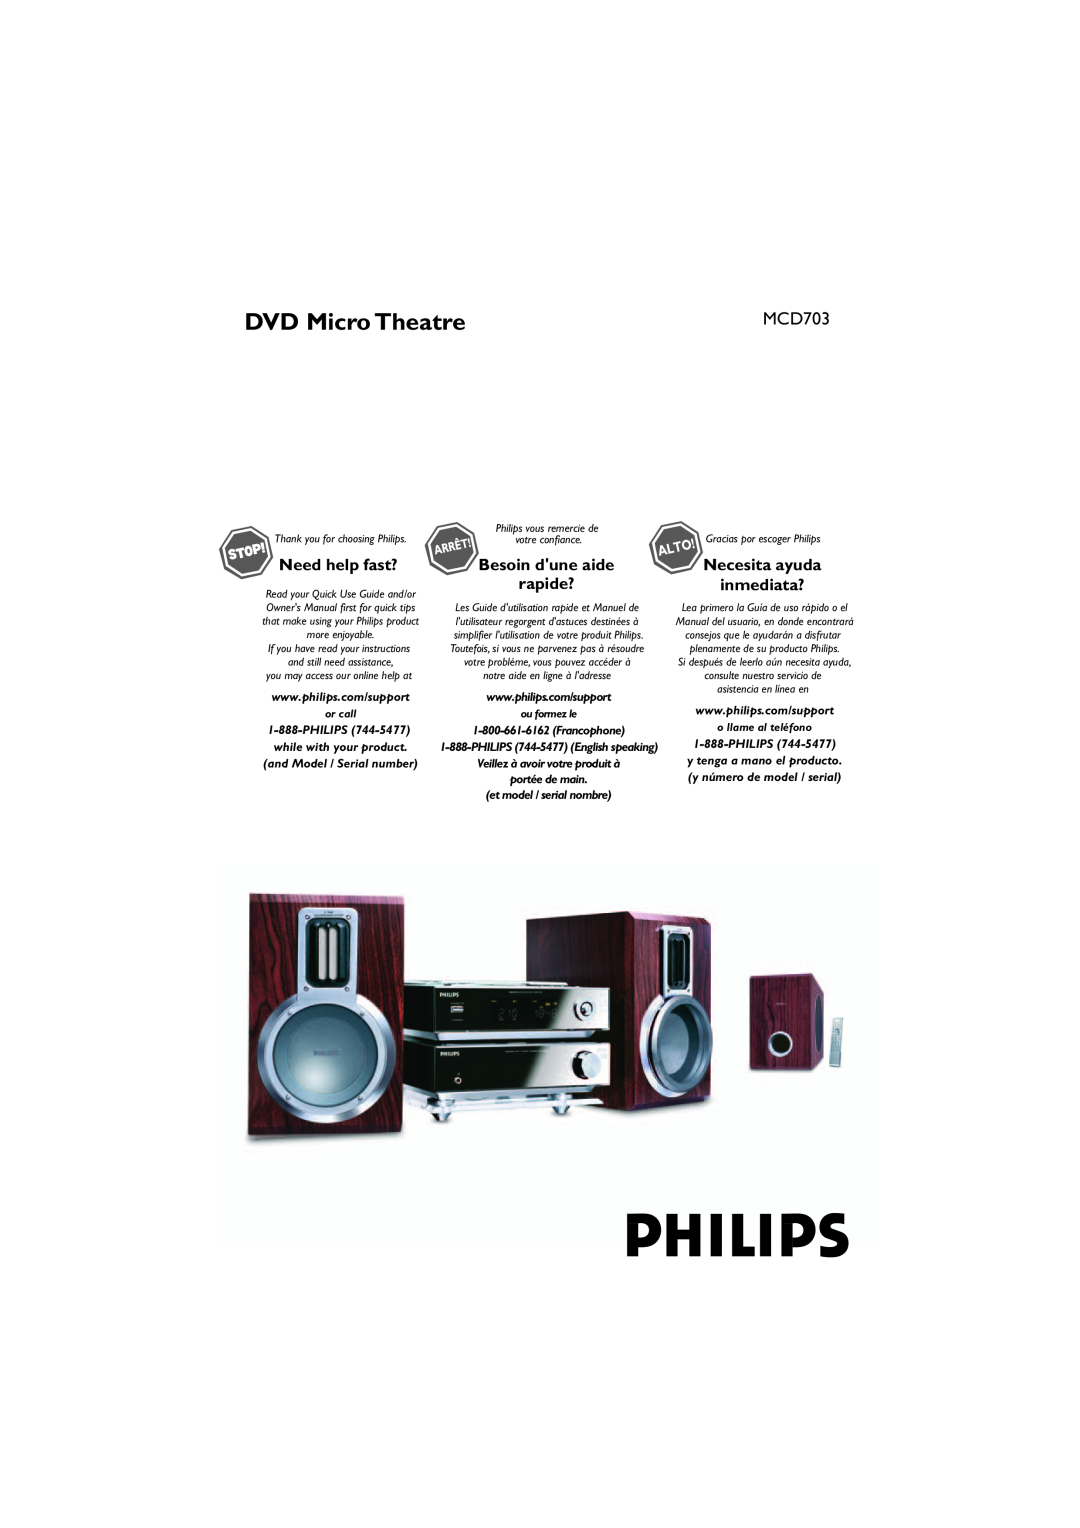 Philips MCD703 owner manual DVD Micro Theatre, Besoin dune aide, Necesita ayuda inmediata?, rapide? 